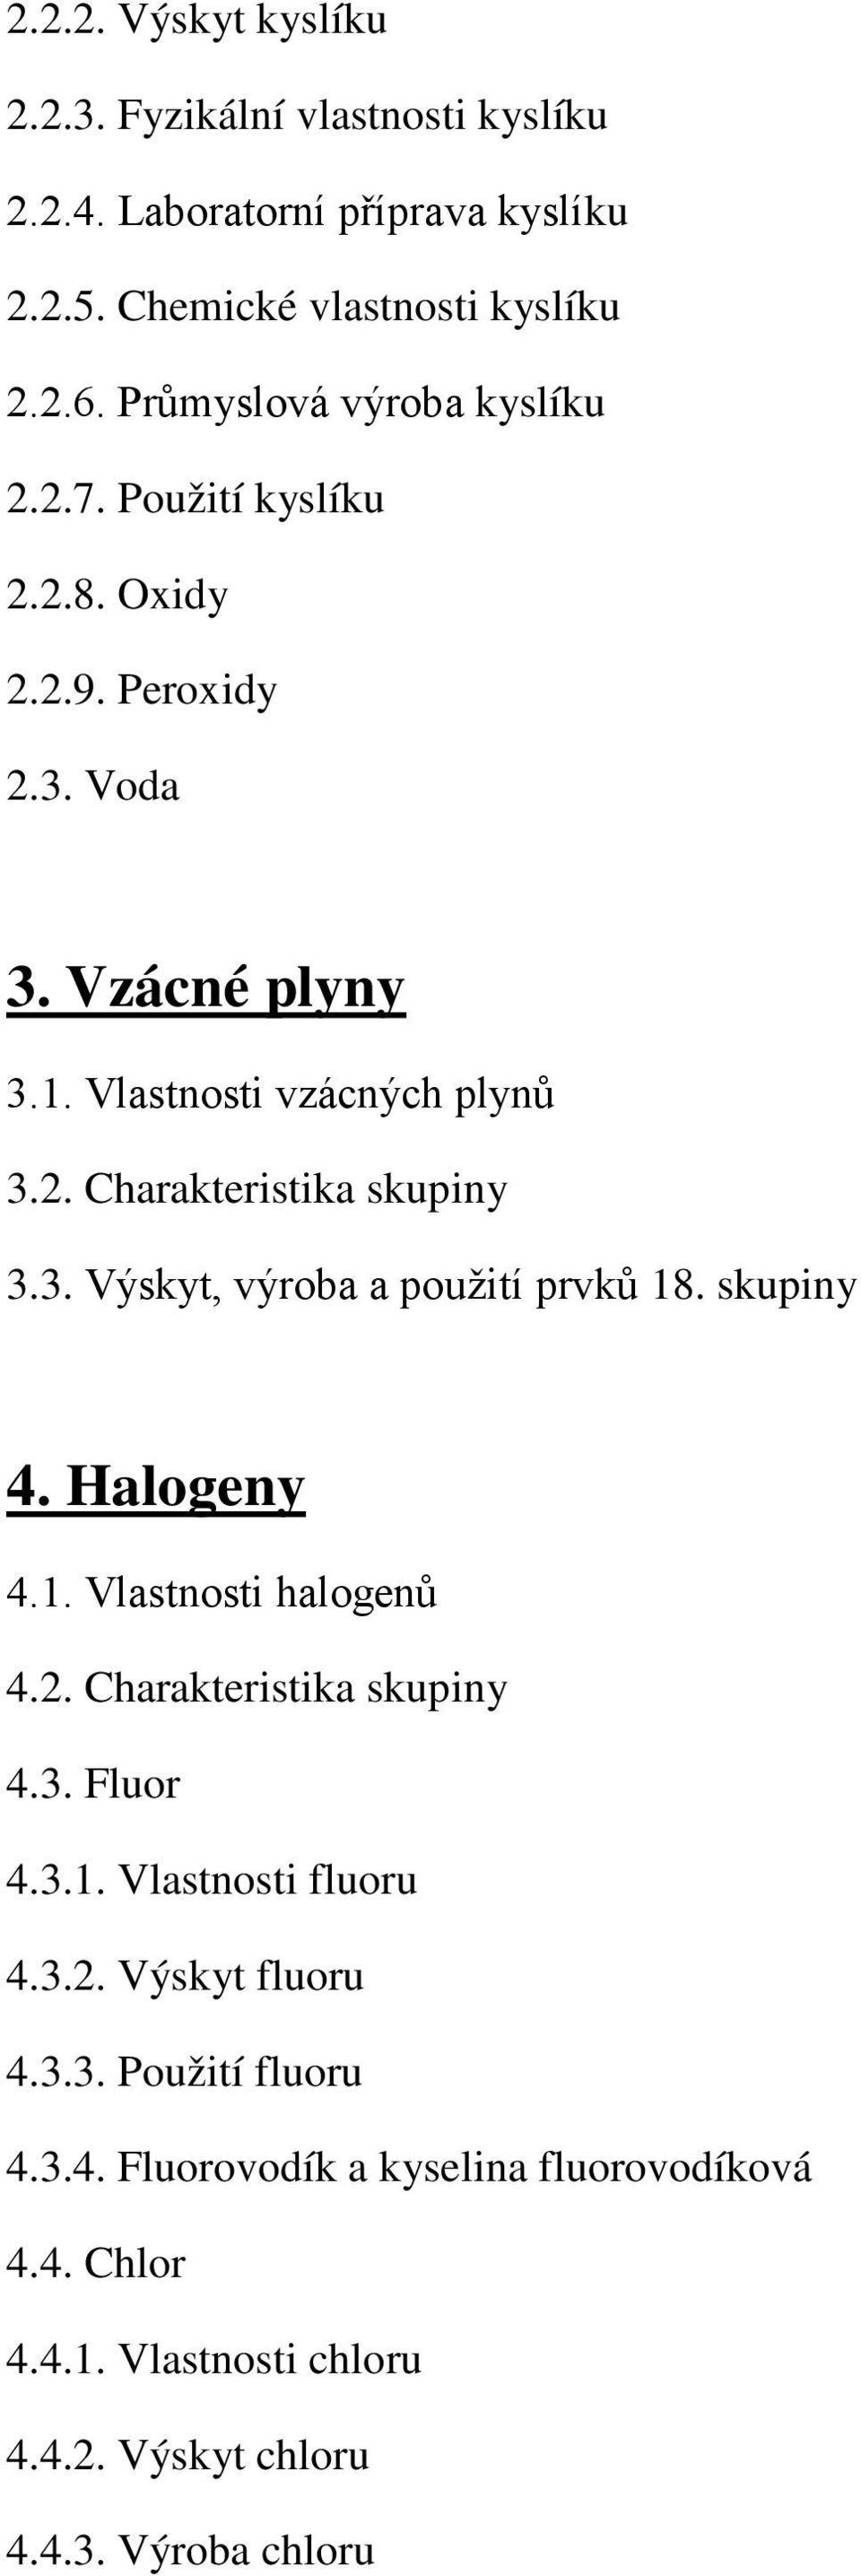 3. Výskyt, výroba a použití prvků 18. skupiny 4. Halogeny 4.1. Vlastnosti halogenů 4.2. Charakteristika skupiny 4.3. Fluor 4.3.1. Vlastnosti fluoru 4.3.2. Výskyt fluoru 4.